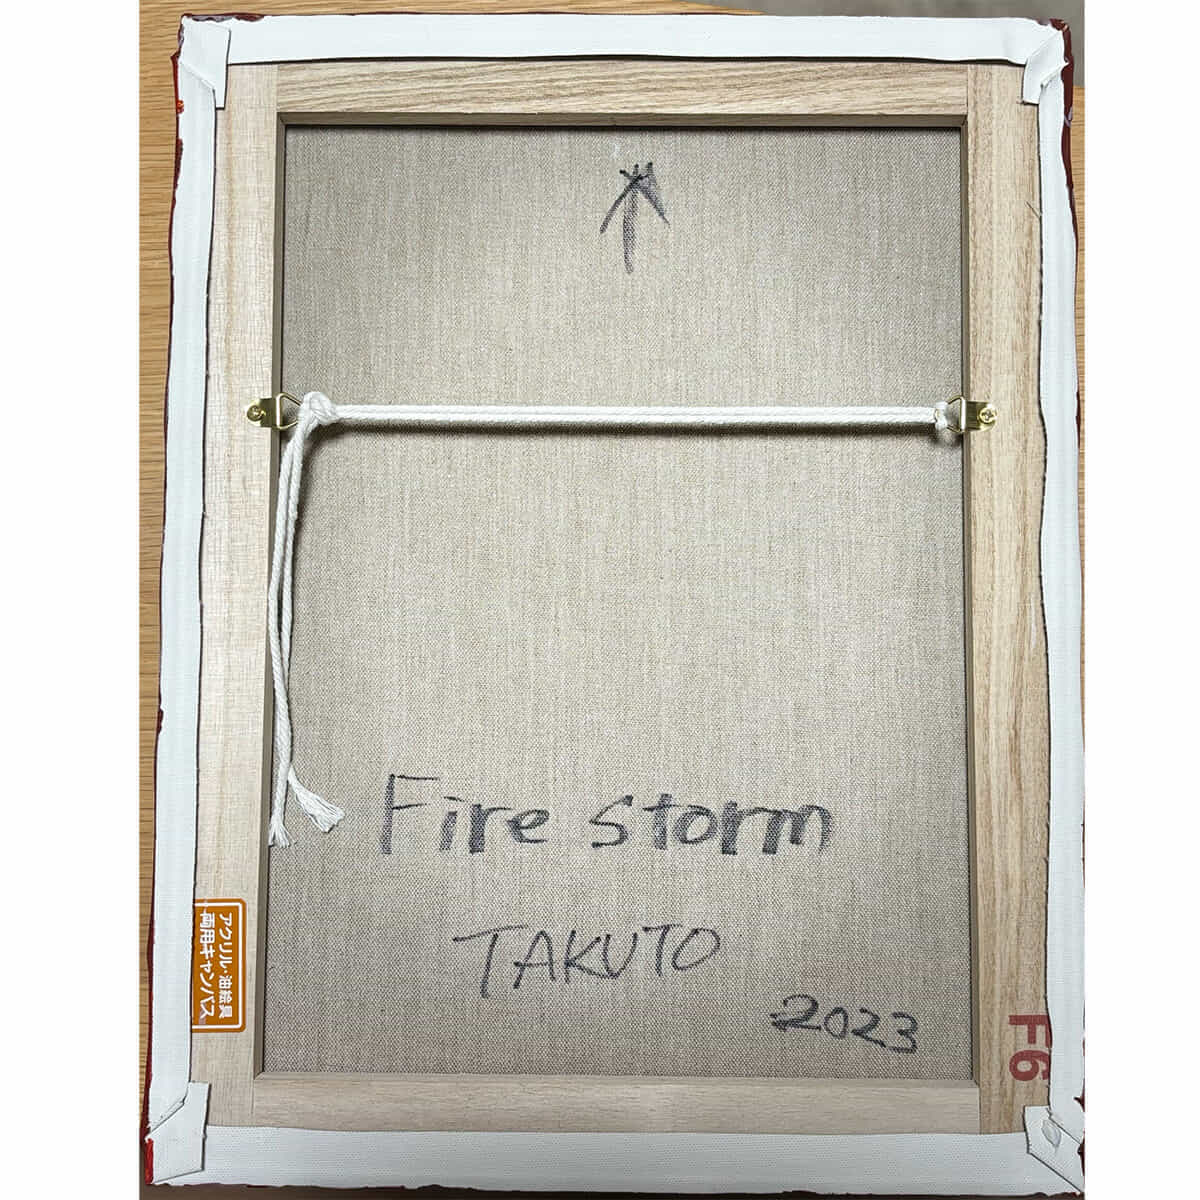 Fire storm-3